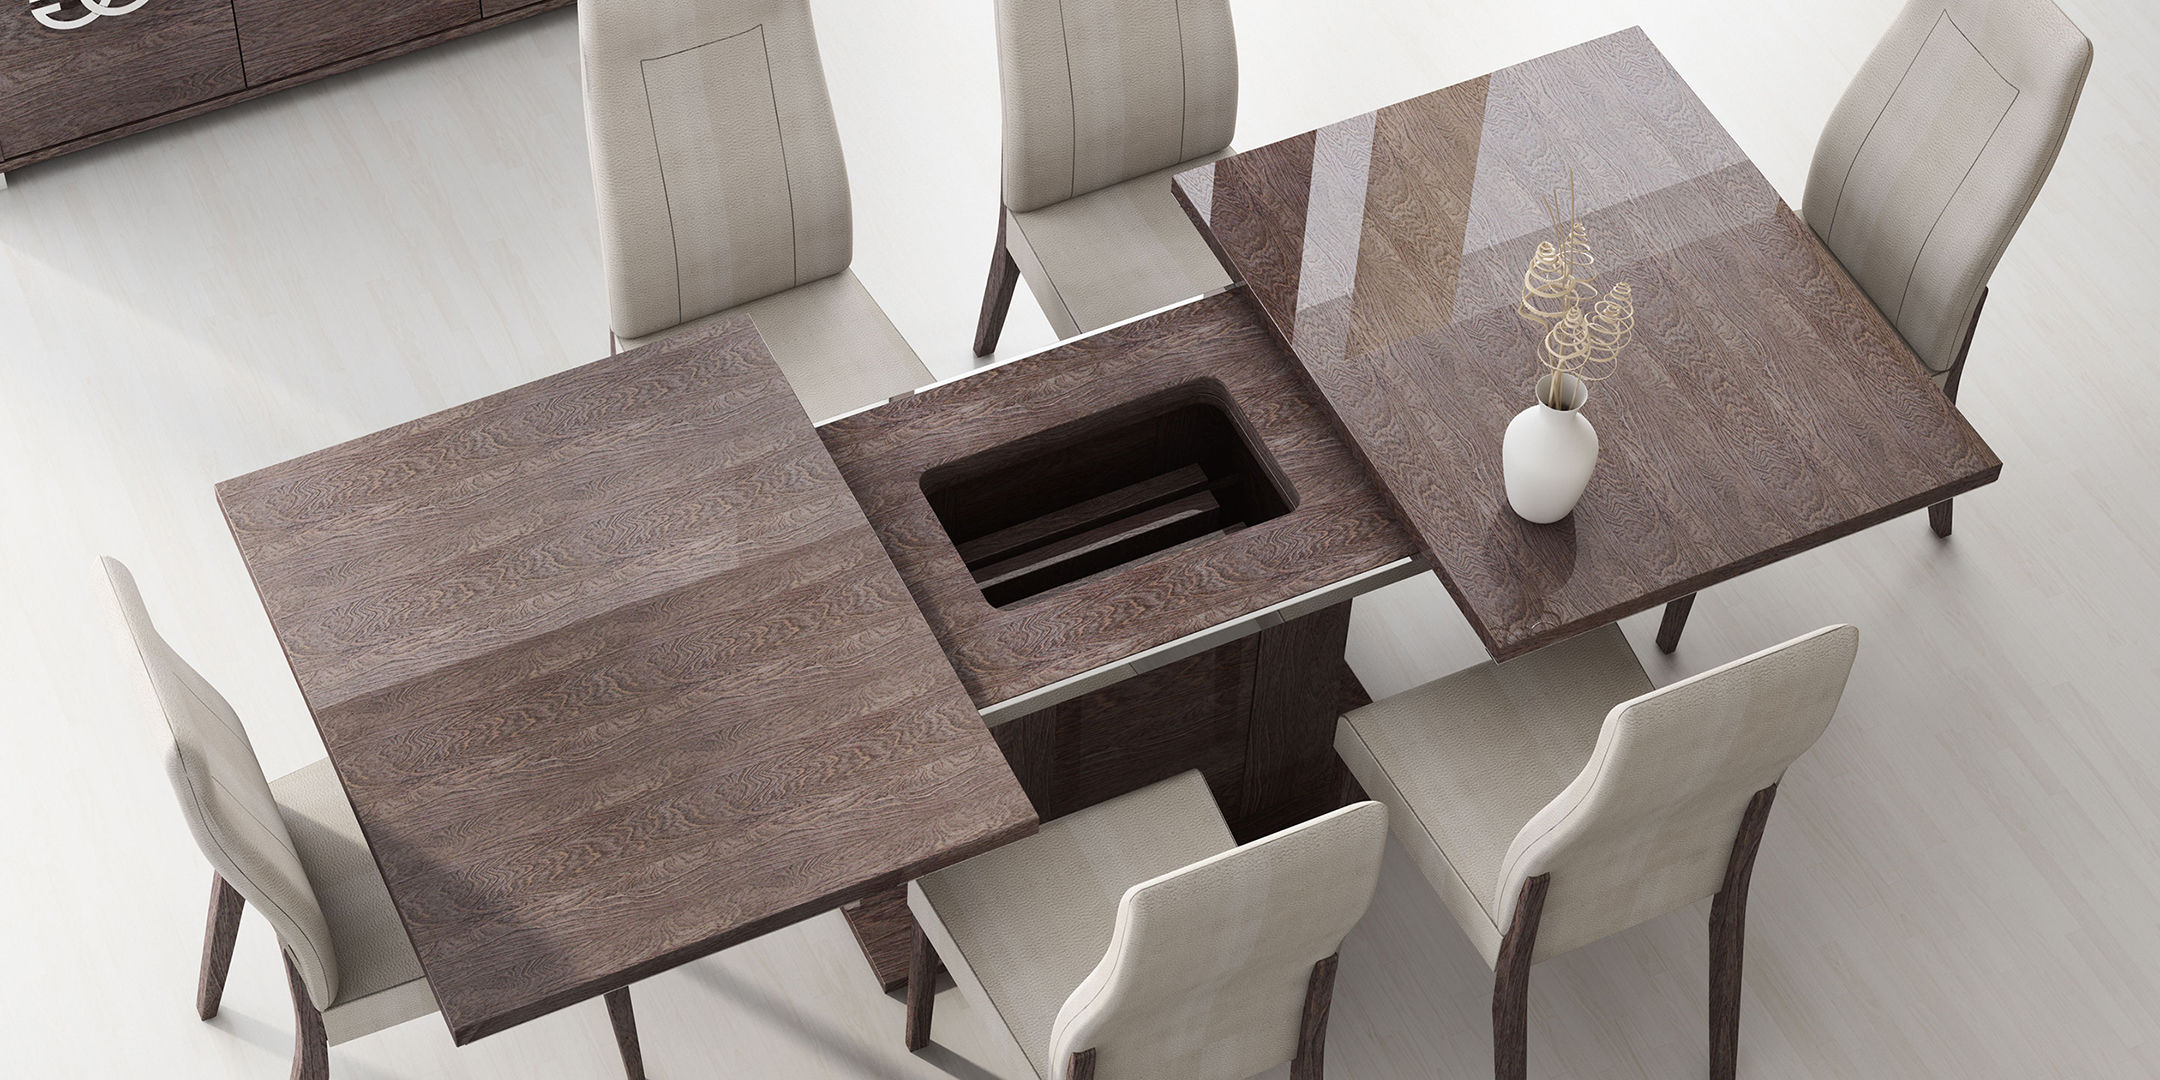 Thiết kế bộ bàn ăn gấp thông minh 6 ghế tiết kiệm diện tích cho bếp nhỏ thêm xinh